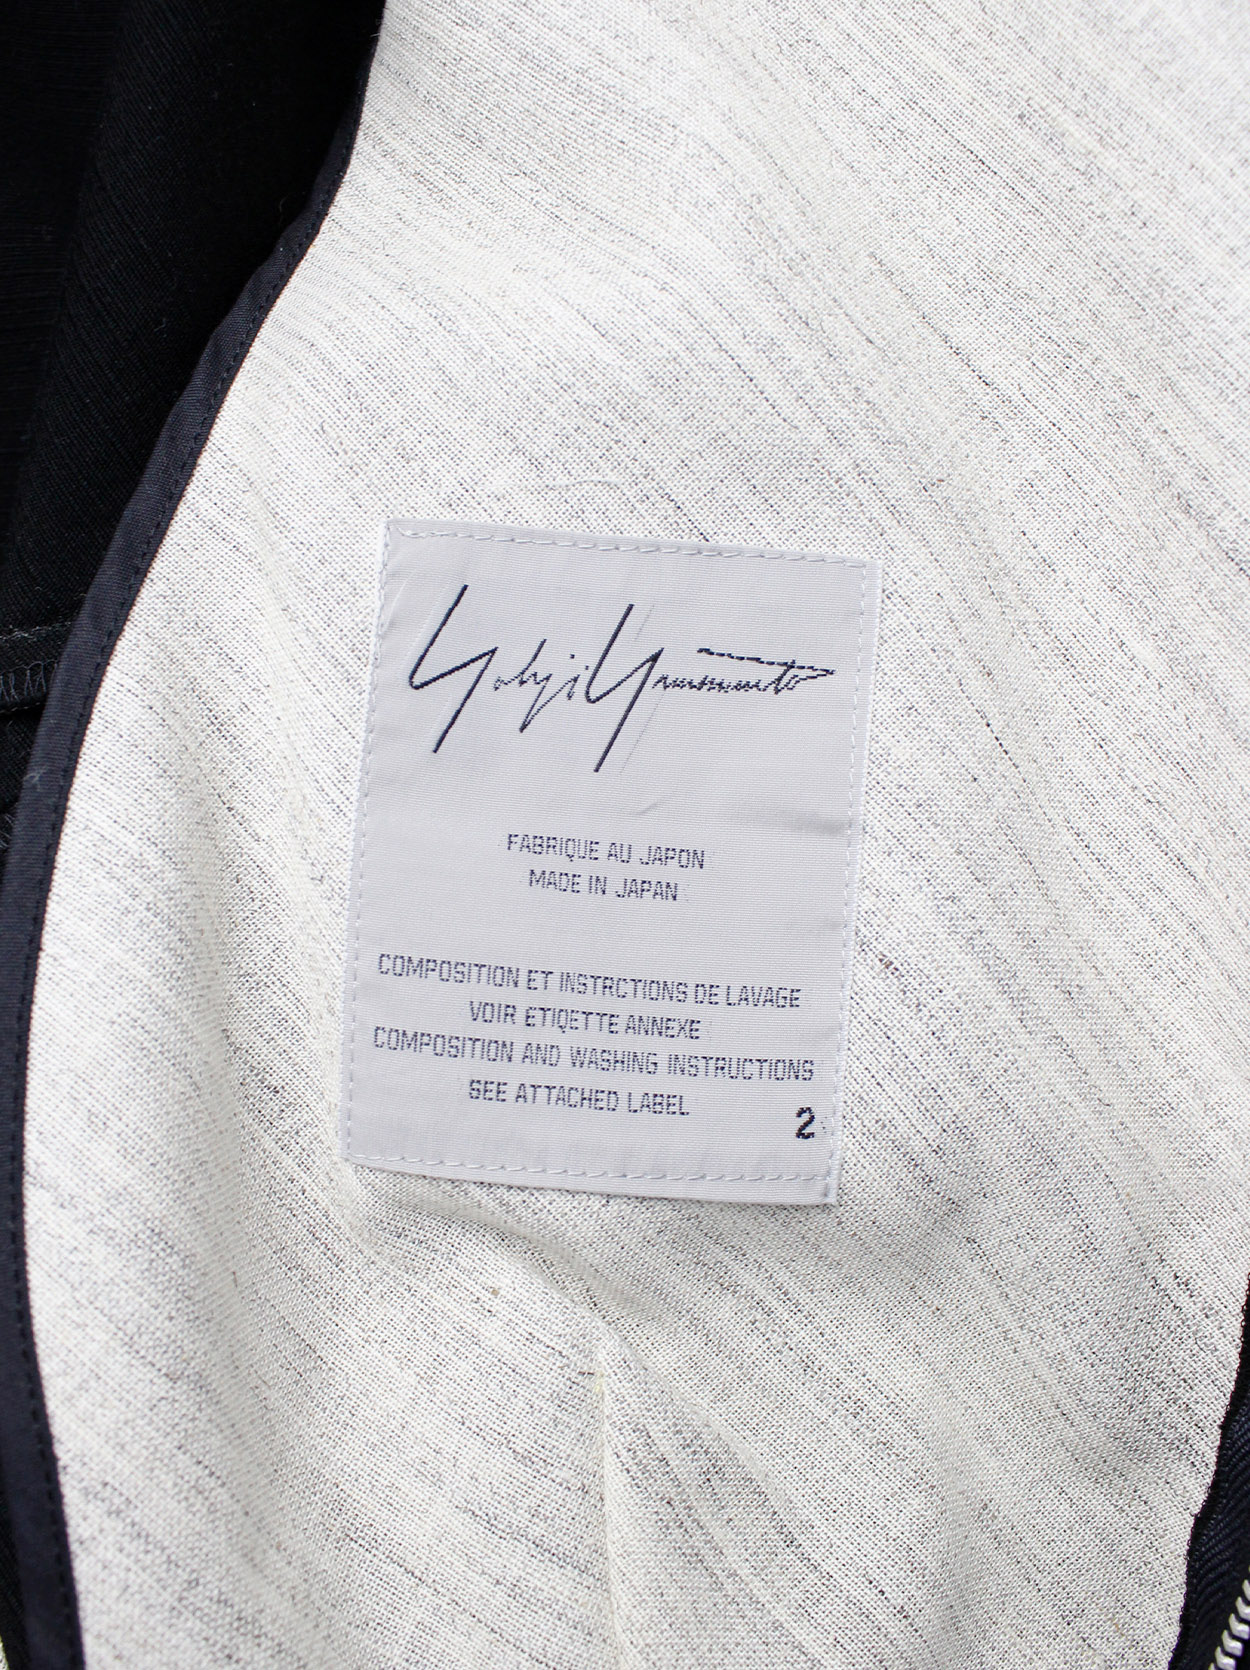 Yohji Yamamoto black peplum jacket with white frayed trims and cut out ...